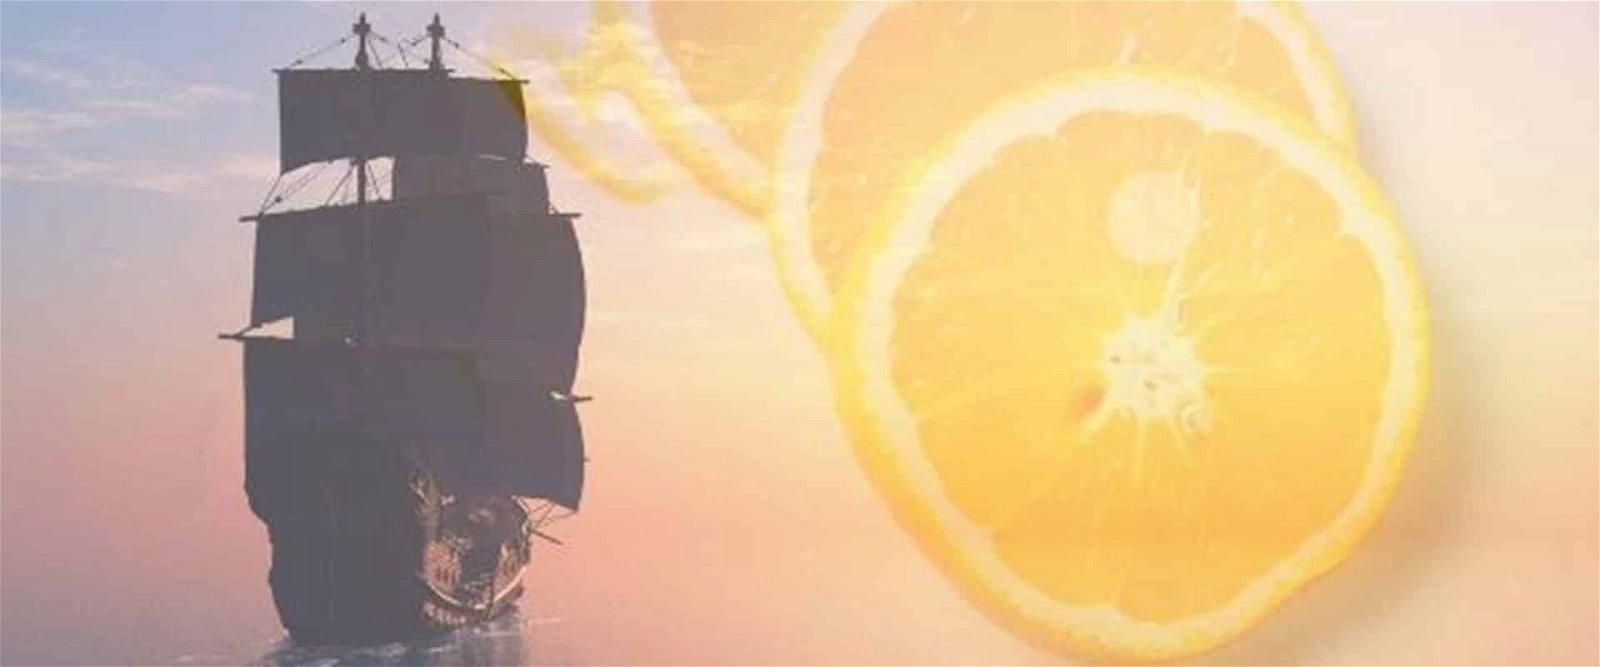 Seefahrer-Schiff kombiniert mit Zitrusfrüchten als Symbol für Vitamin C